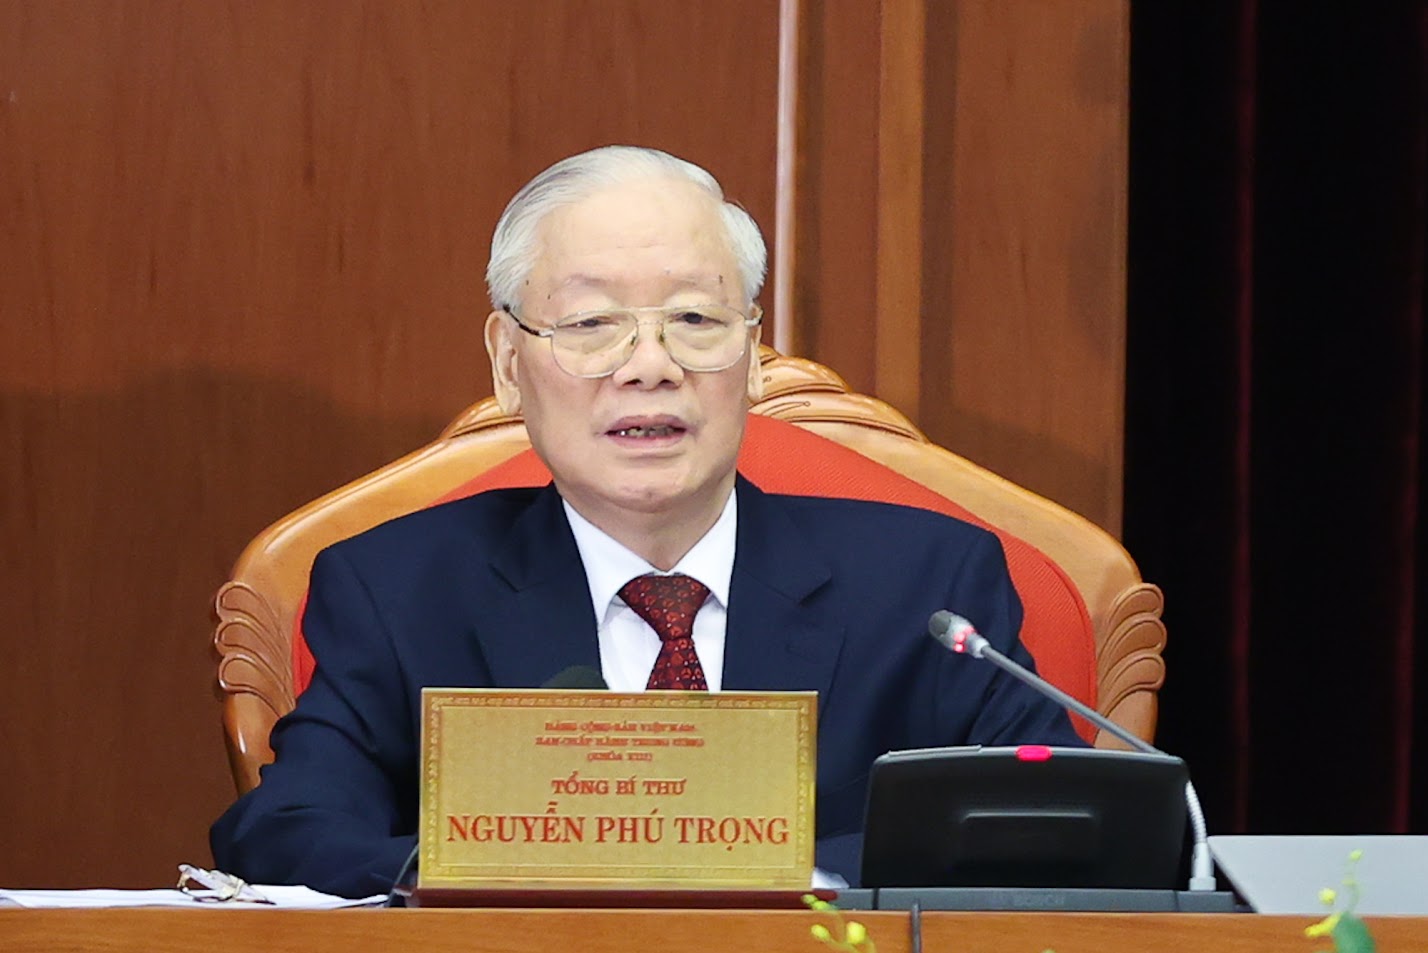 Toàn văn phát biểu khai mạc Hội nghị Trung ương 9 của Tổng Bí thư Nguyễn Phú Trọng- Ảnh 1.